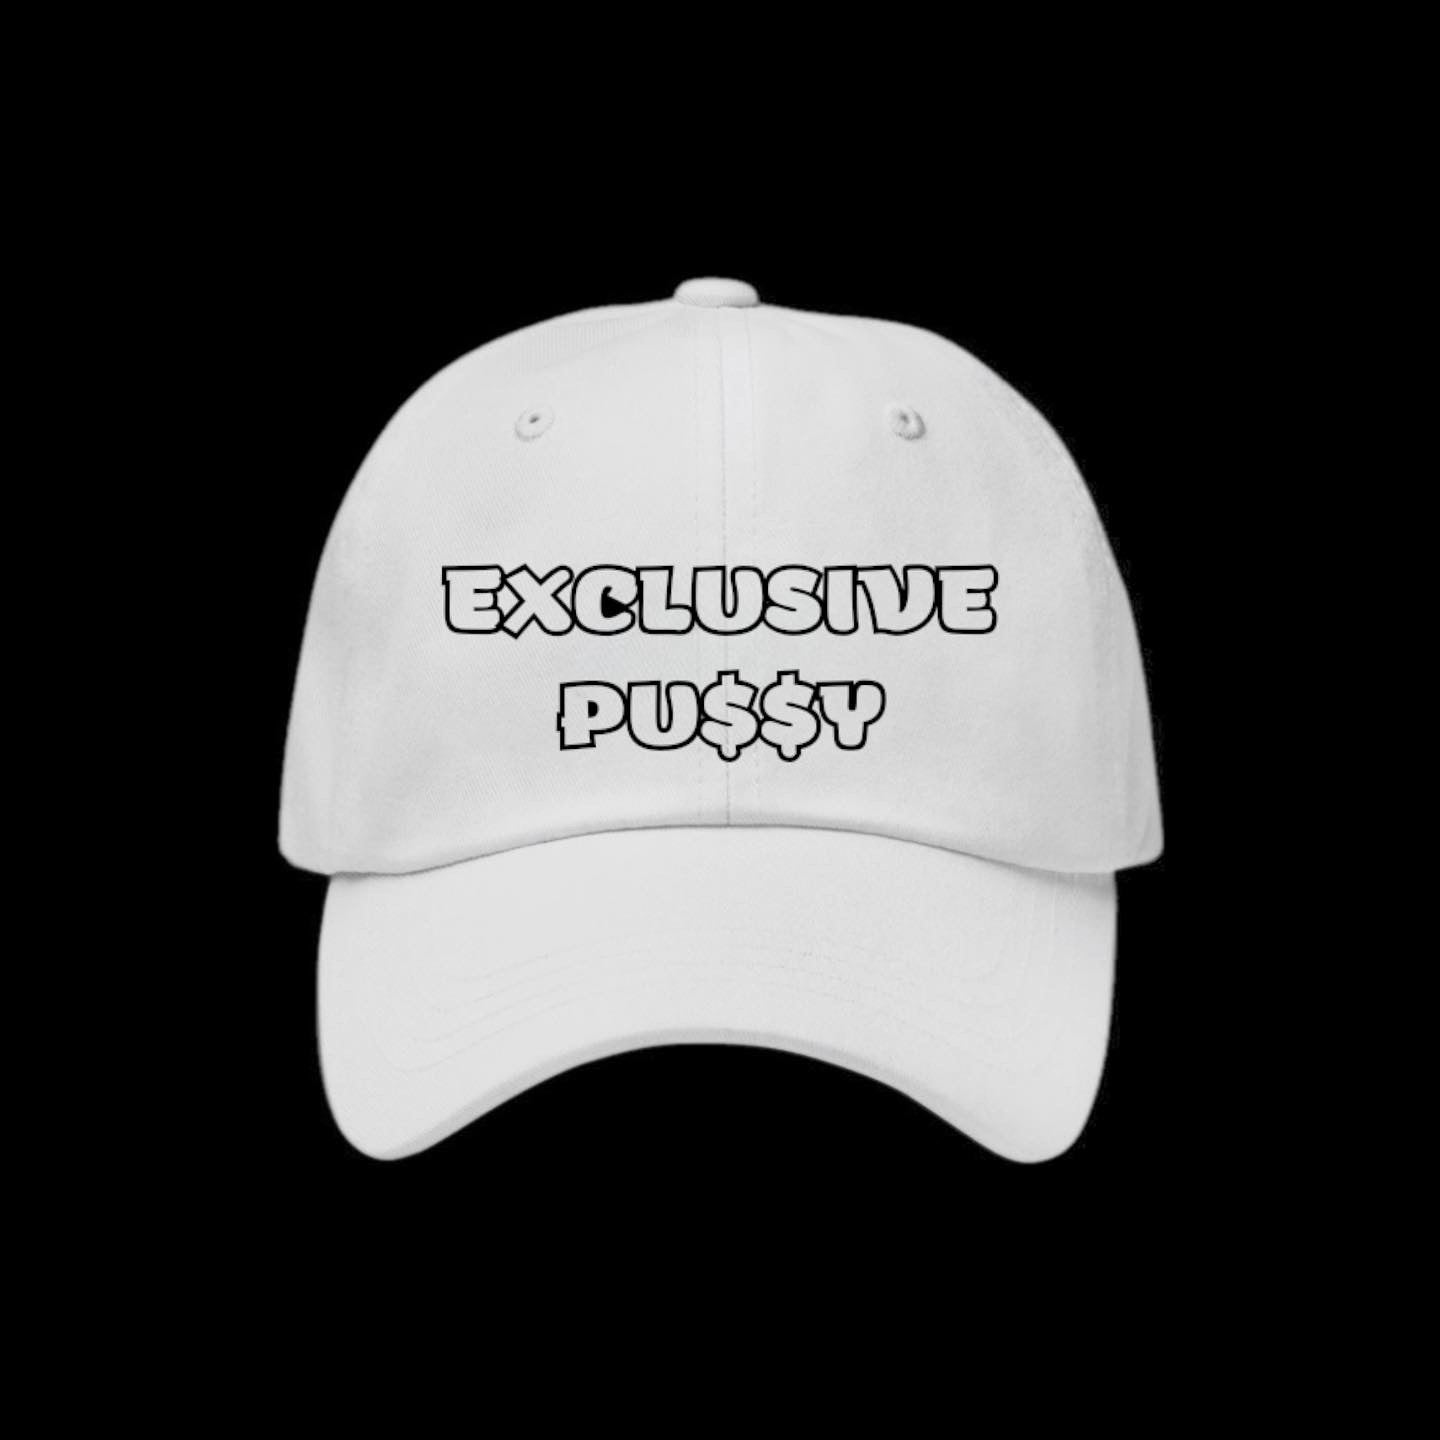 Exclusive Pu$$y dad hat